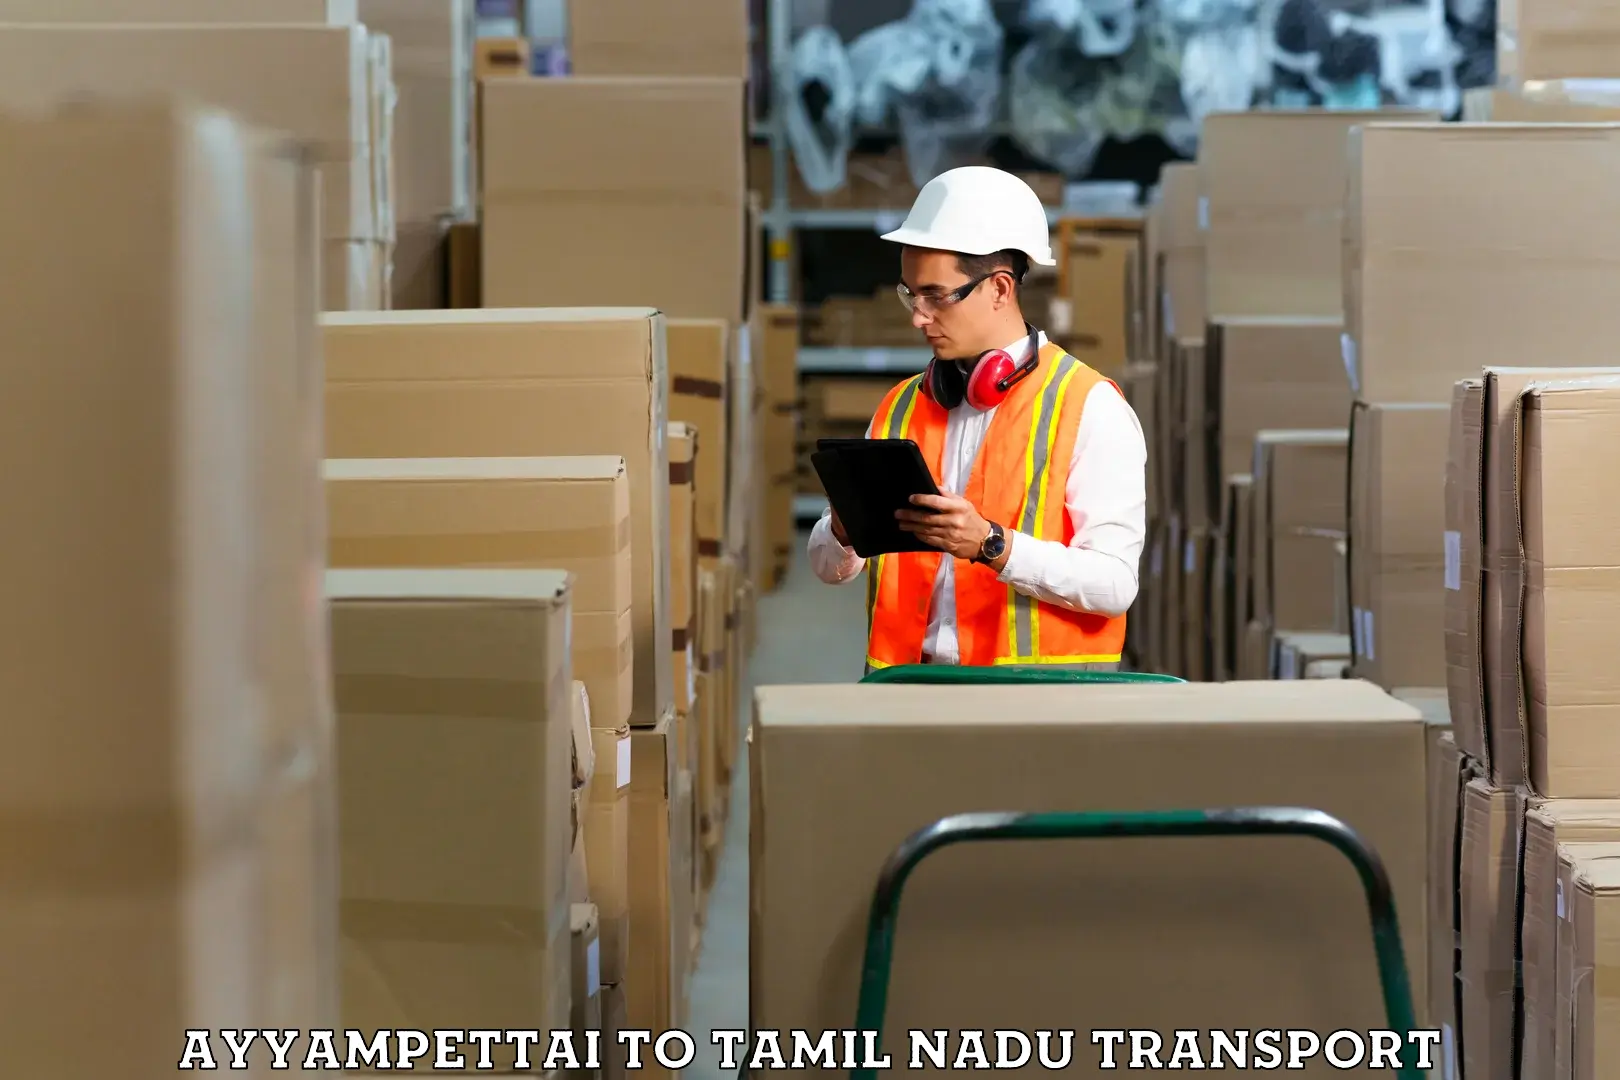 Container transport service Ayyampettai to Kanyakumari